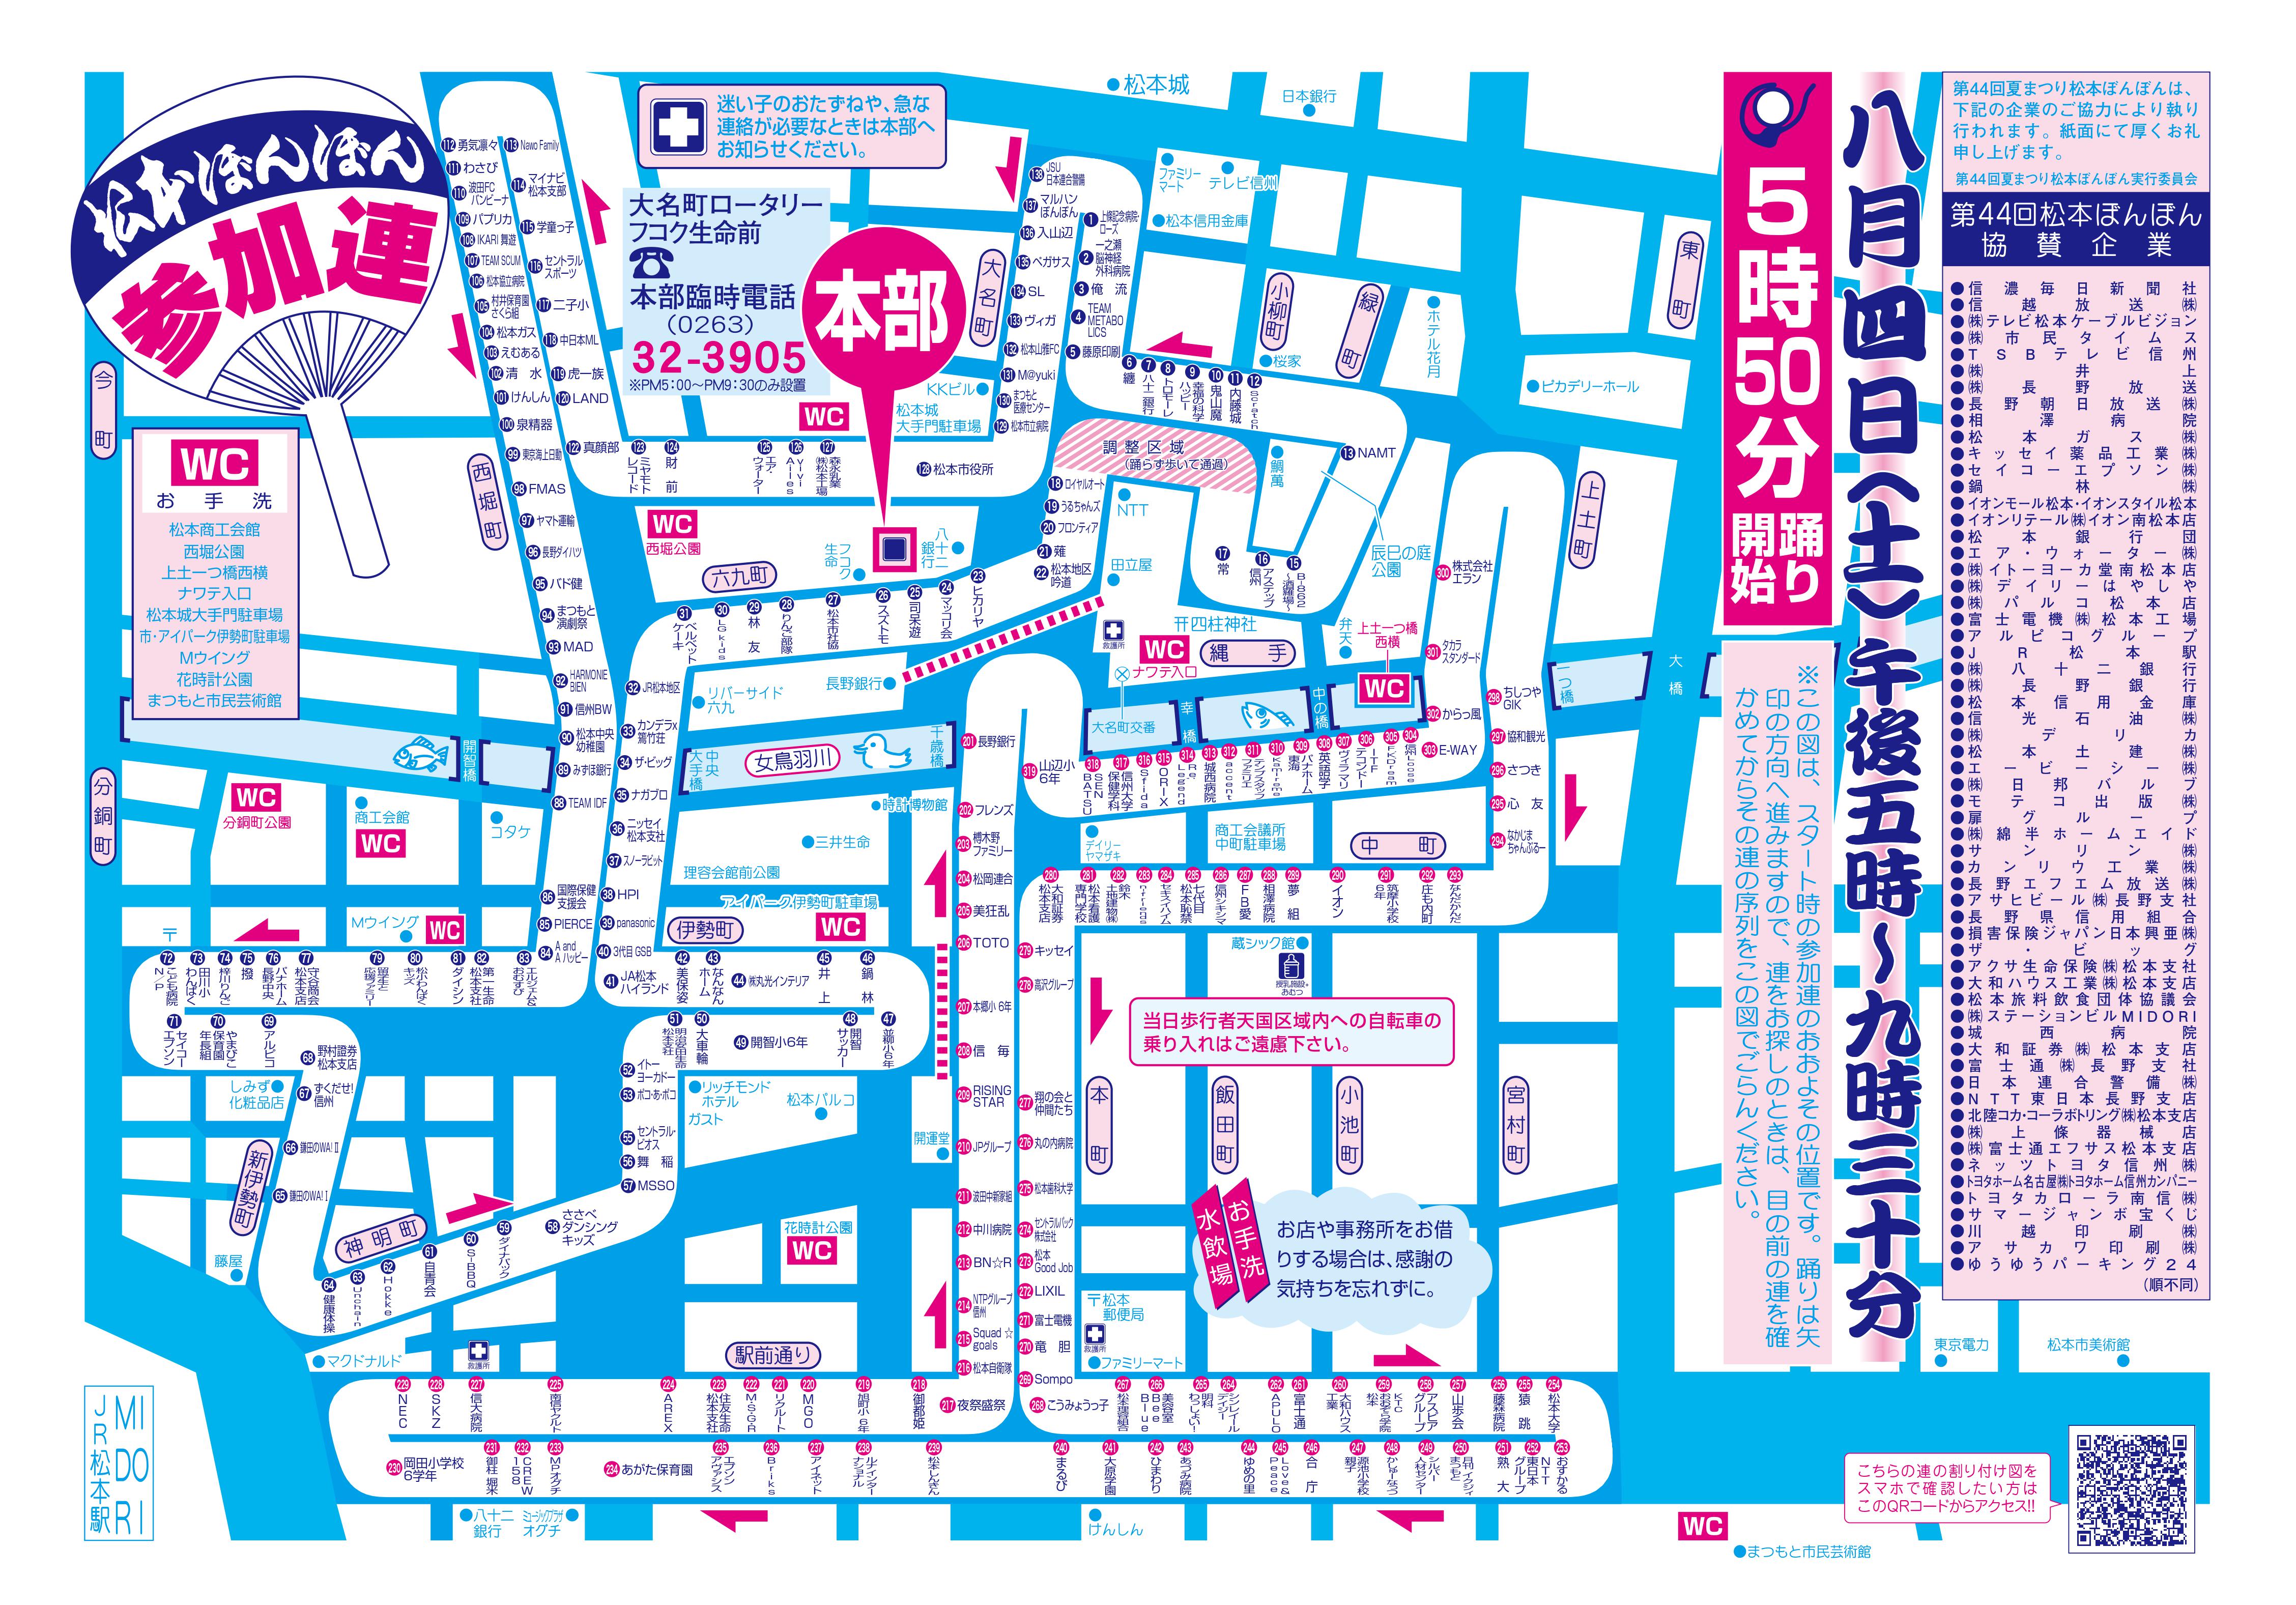 長野県松本市 松本ぼんぼん18参加連マップ はぐまつ 子育てコミュニティサイト